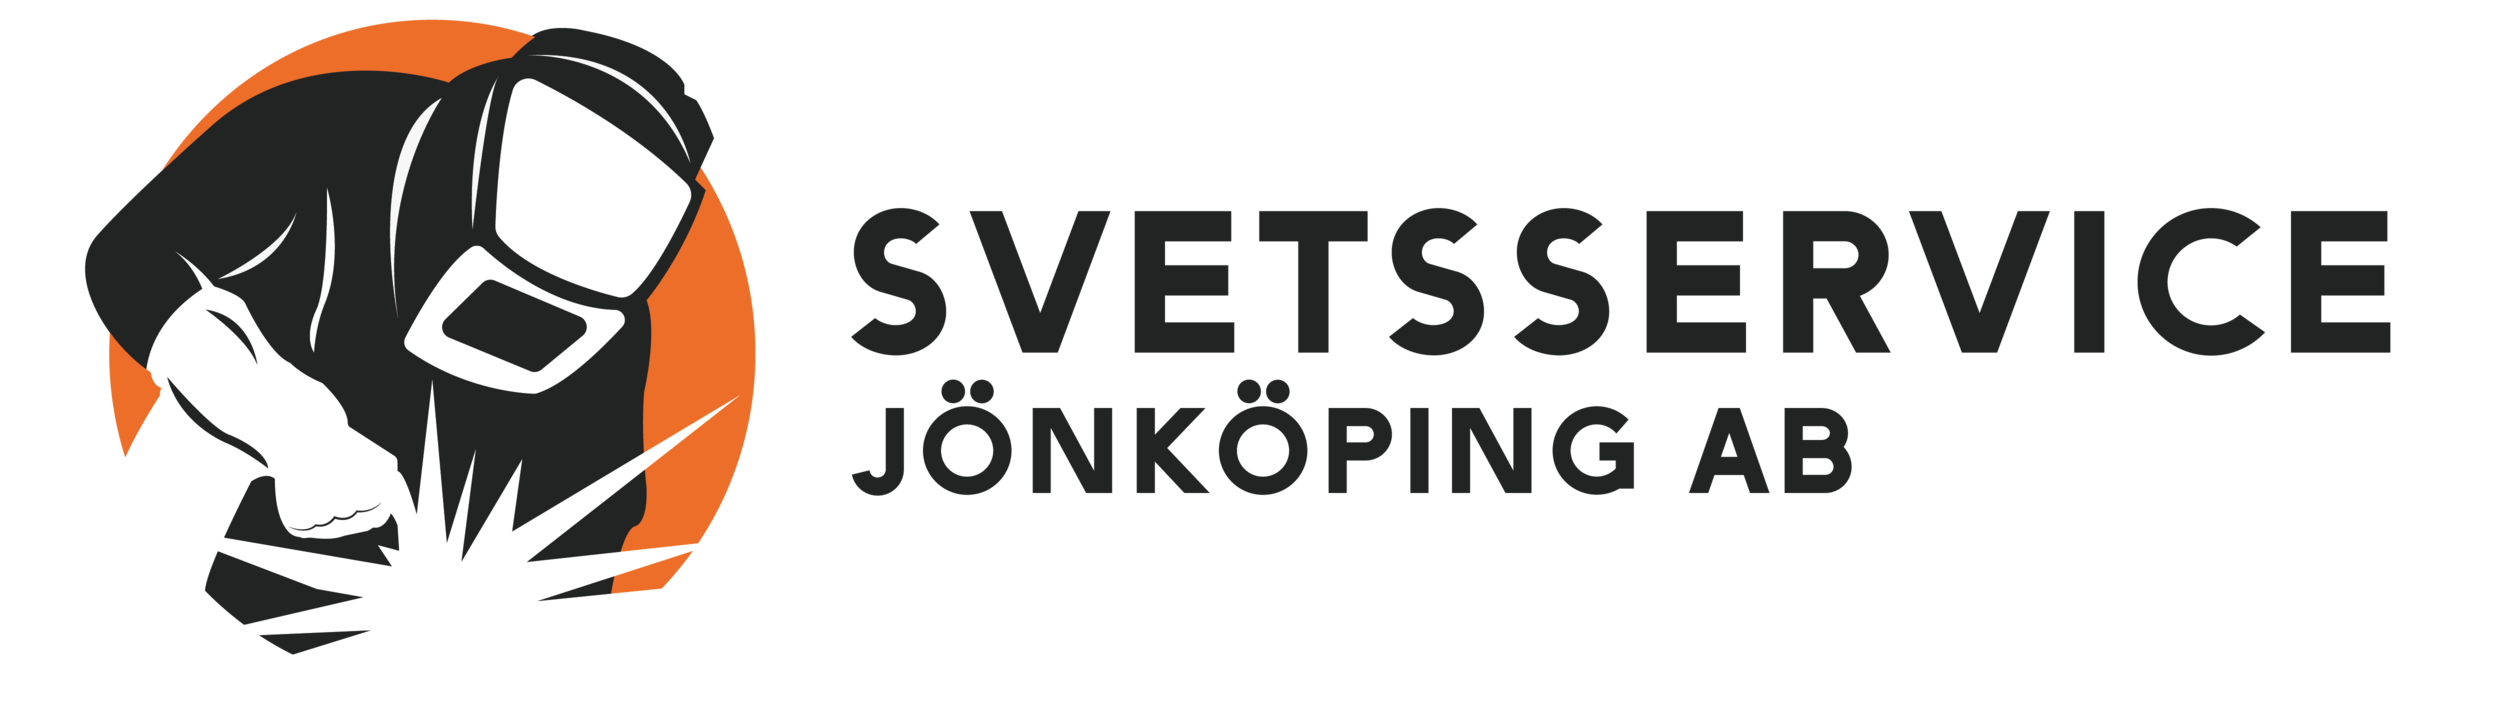 Svetsservice Jönköping